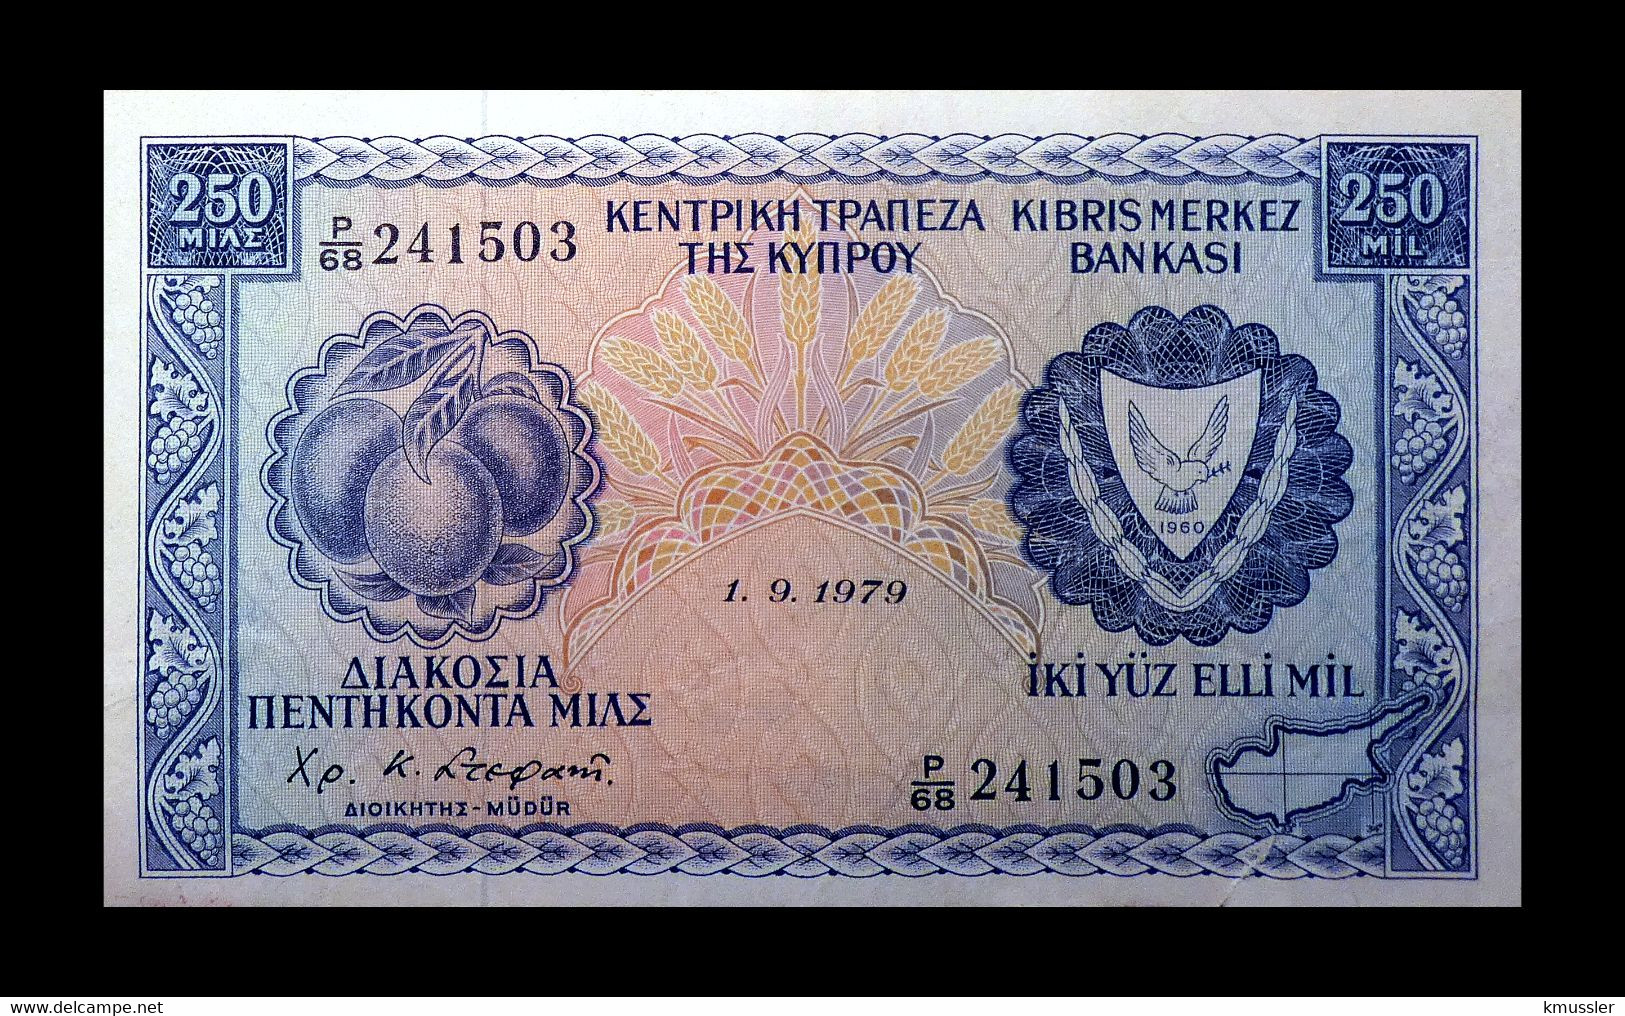 # # # Banknote Zypern (Cyprus) 250 Mils 1979 # # # - Zypern